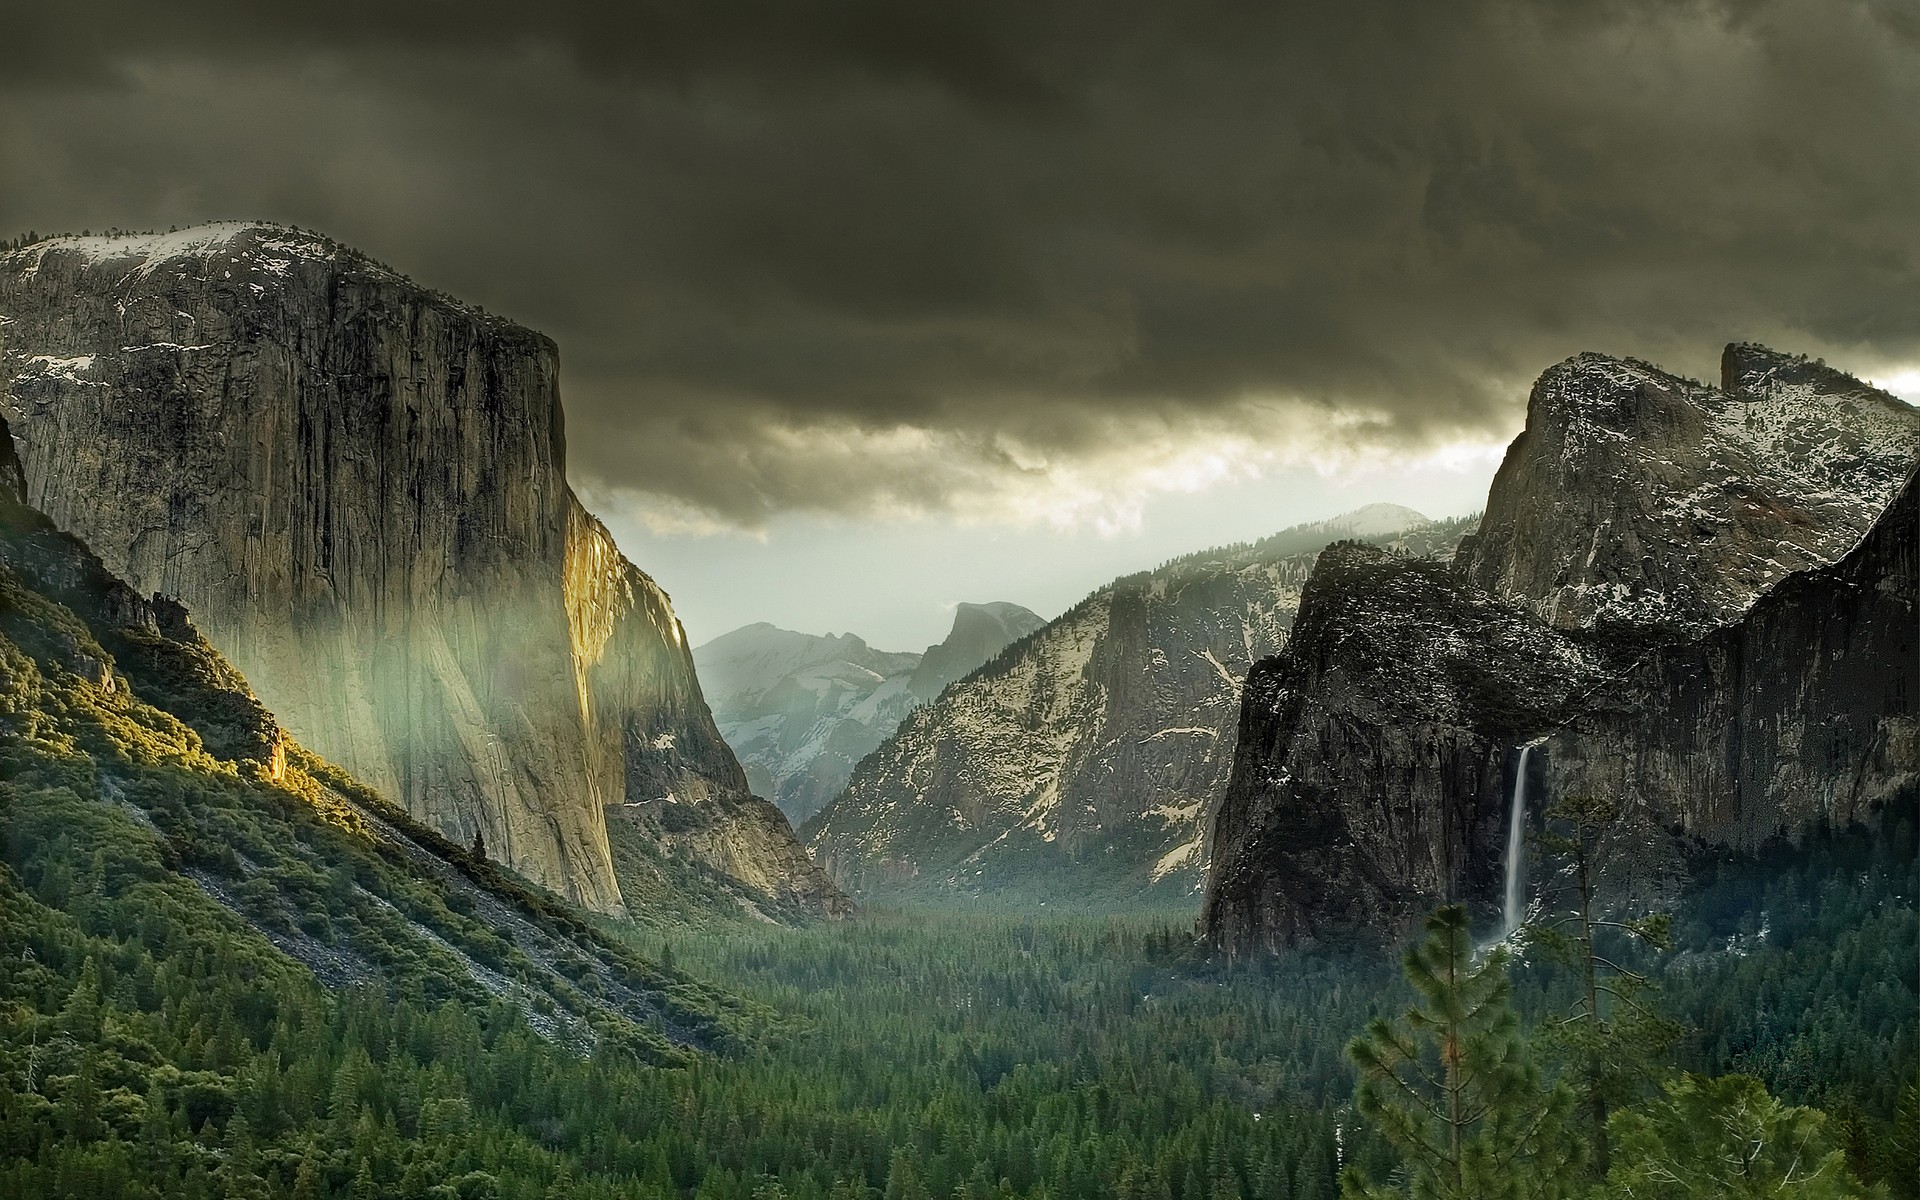 Nếu bạn muốn tận hưởng vẻ đẹp nơi tỉnh Yosemite, hãy trang trí màn hình của mình bằng ảnh nền HD của nó. Những tấm hình này sẽ cho bạn cảm giác như đang đứng giữa rừng cây mỏng manh, trước một dãy núi cao vút và những thác nước tuyệt đẹp. Hãy tải ngay ảnh nền HD Yosemite và bắt đầu khám phá vẻ đẹp thiên nhiên tuyệt vời này!